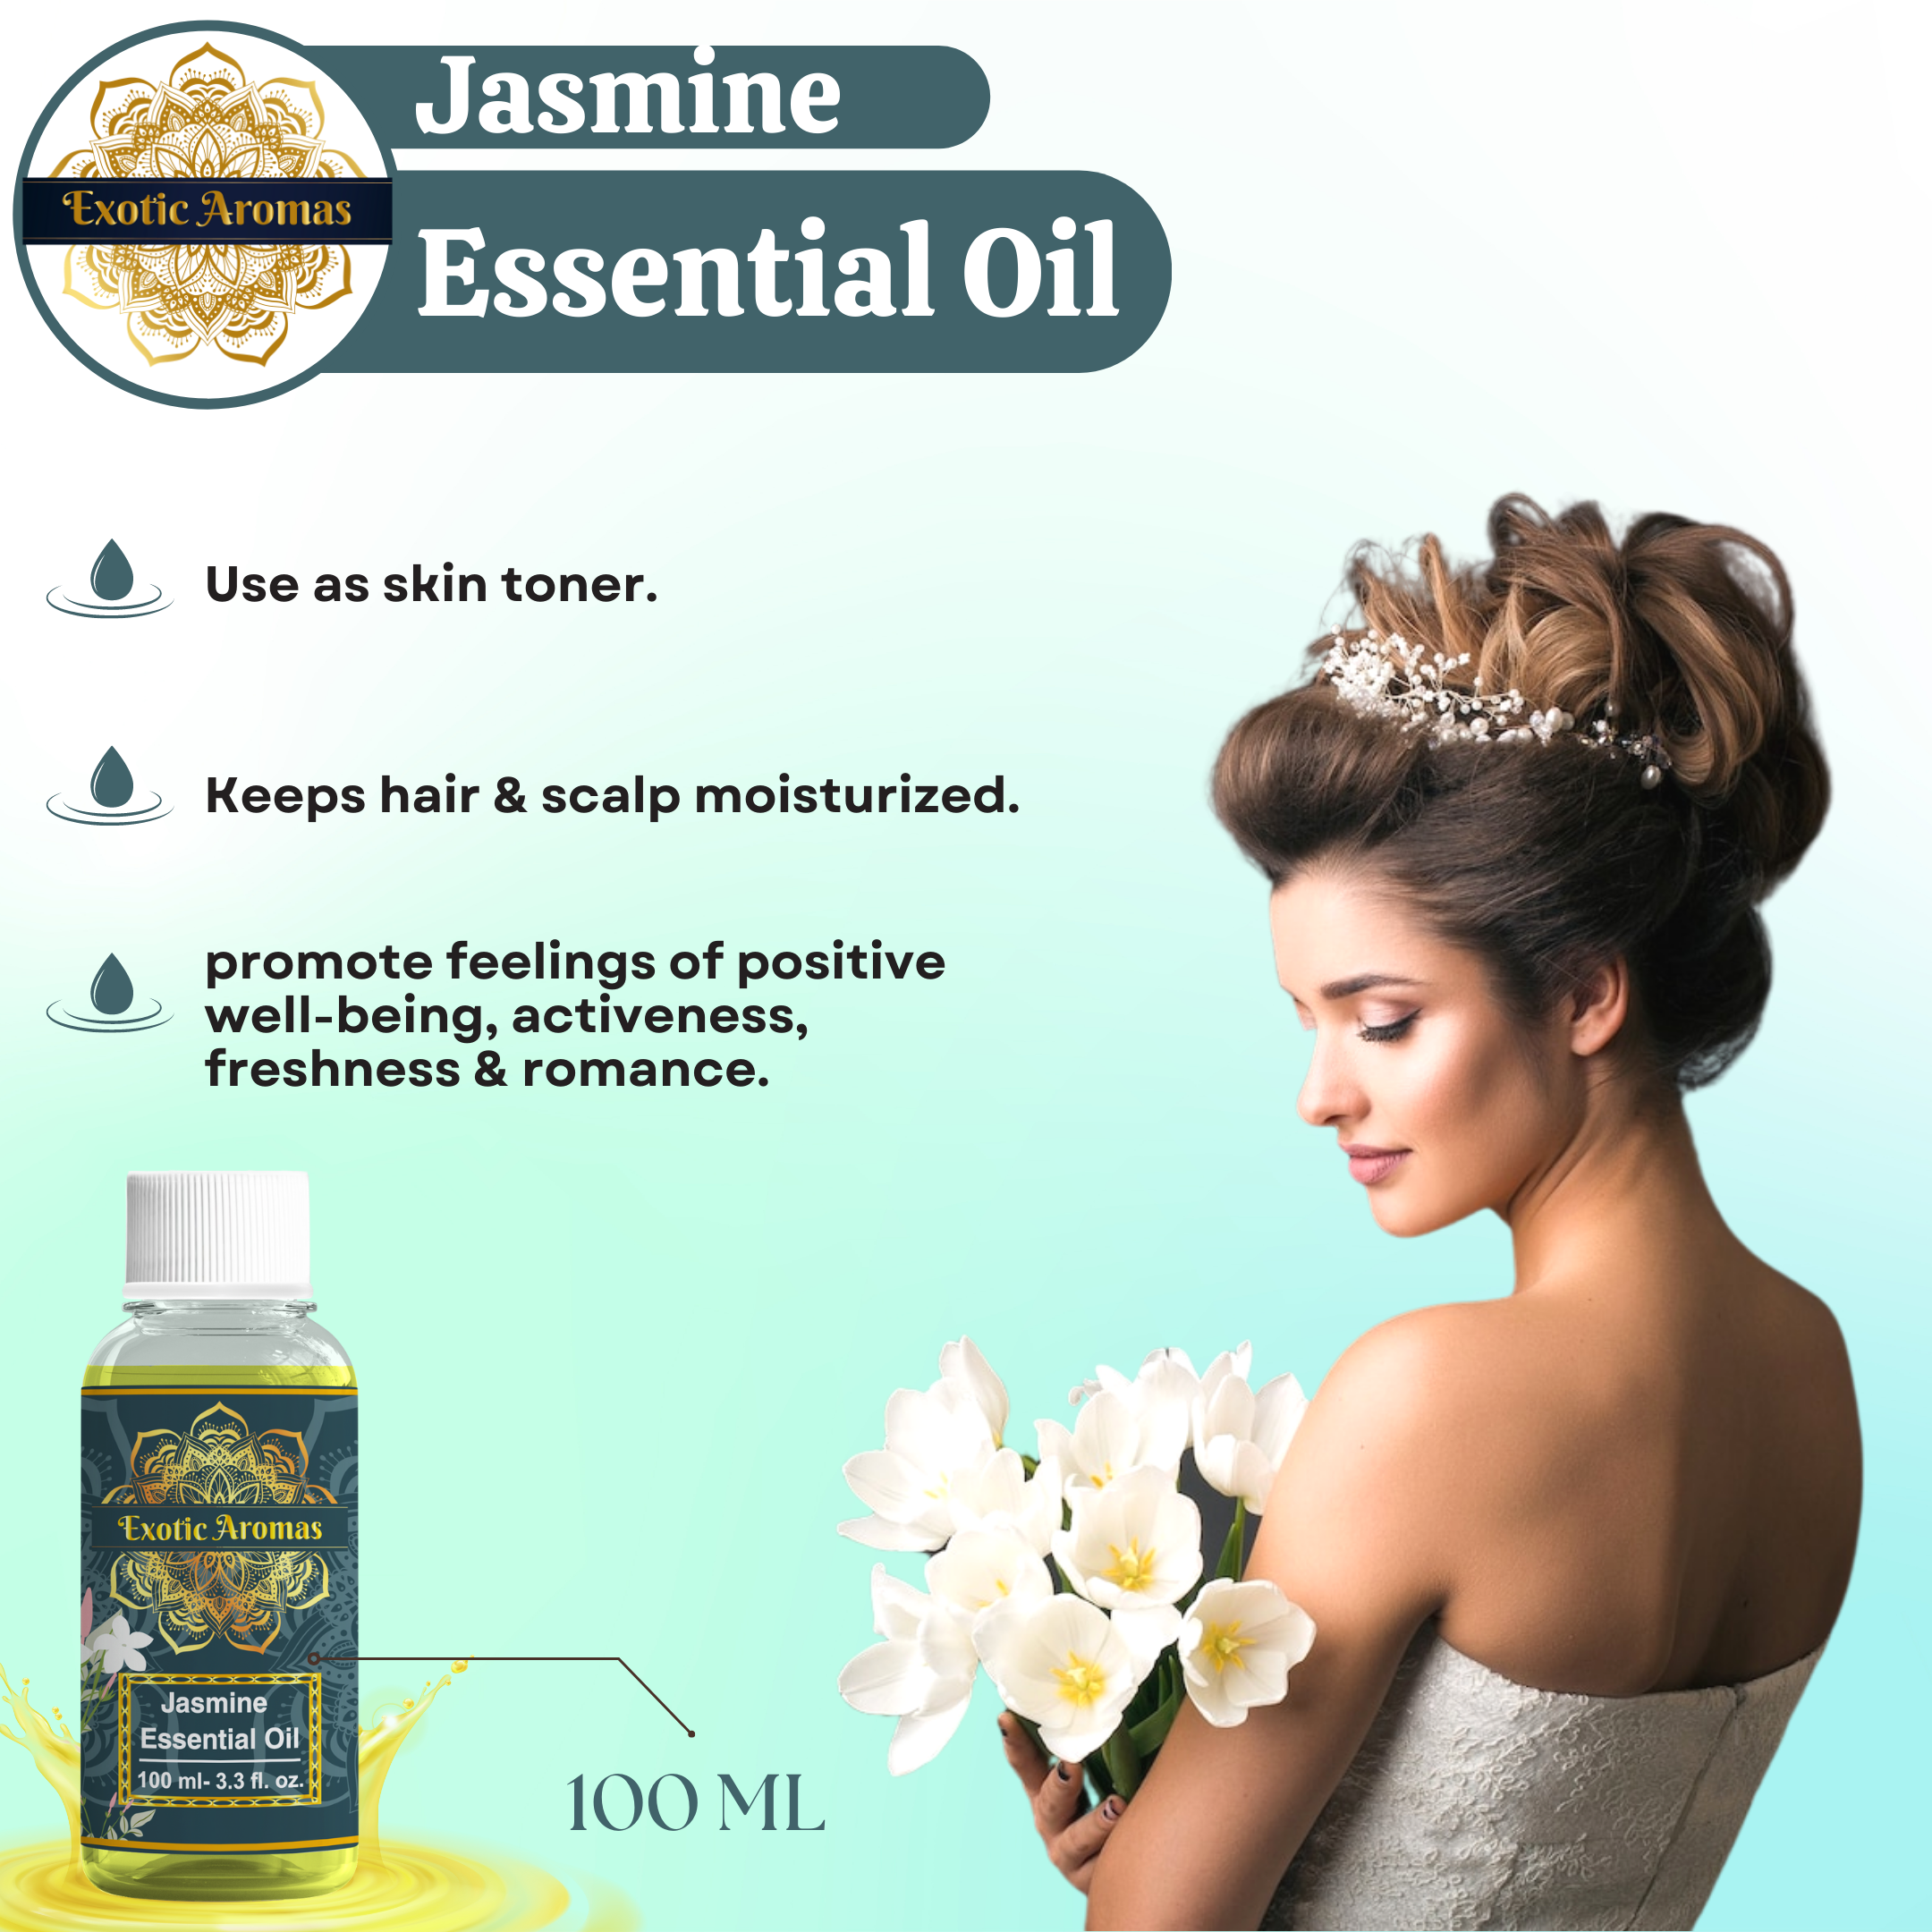 Jasmine essential oil